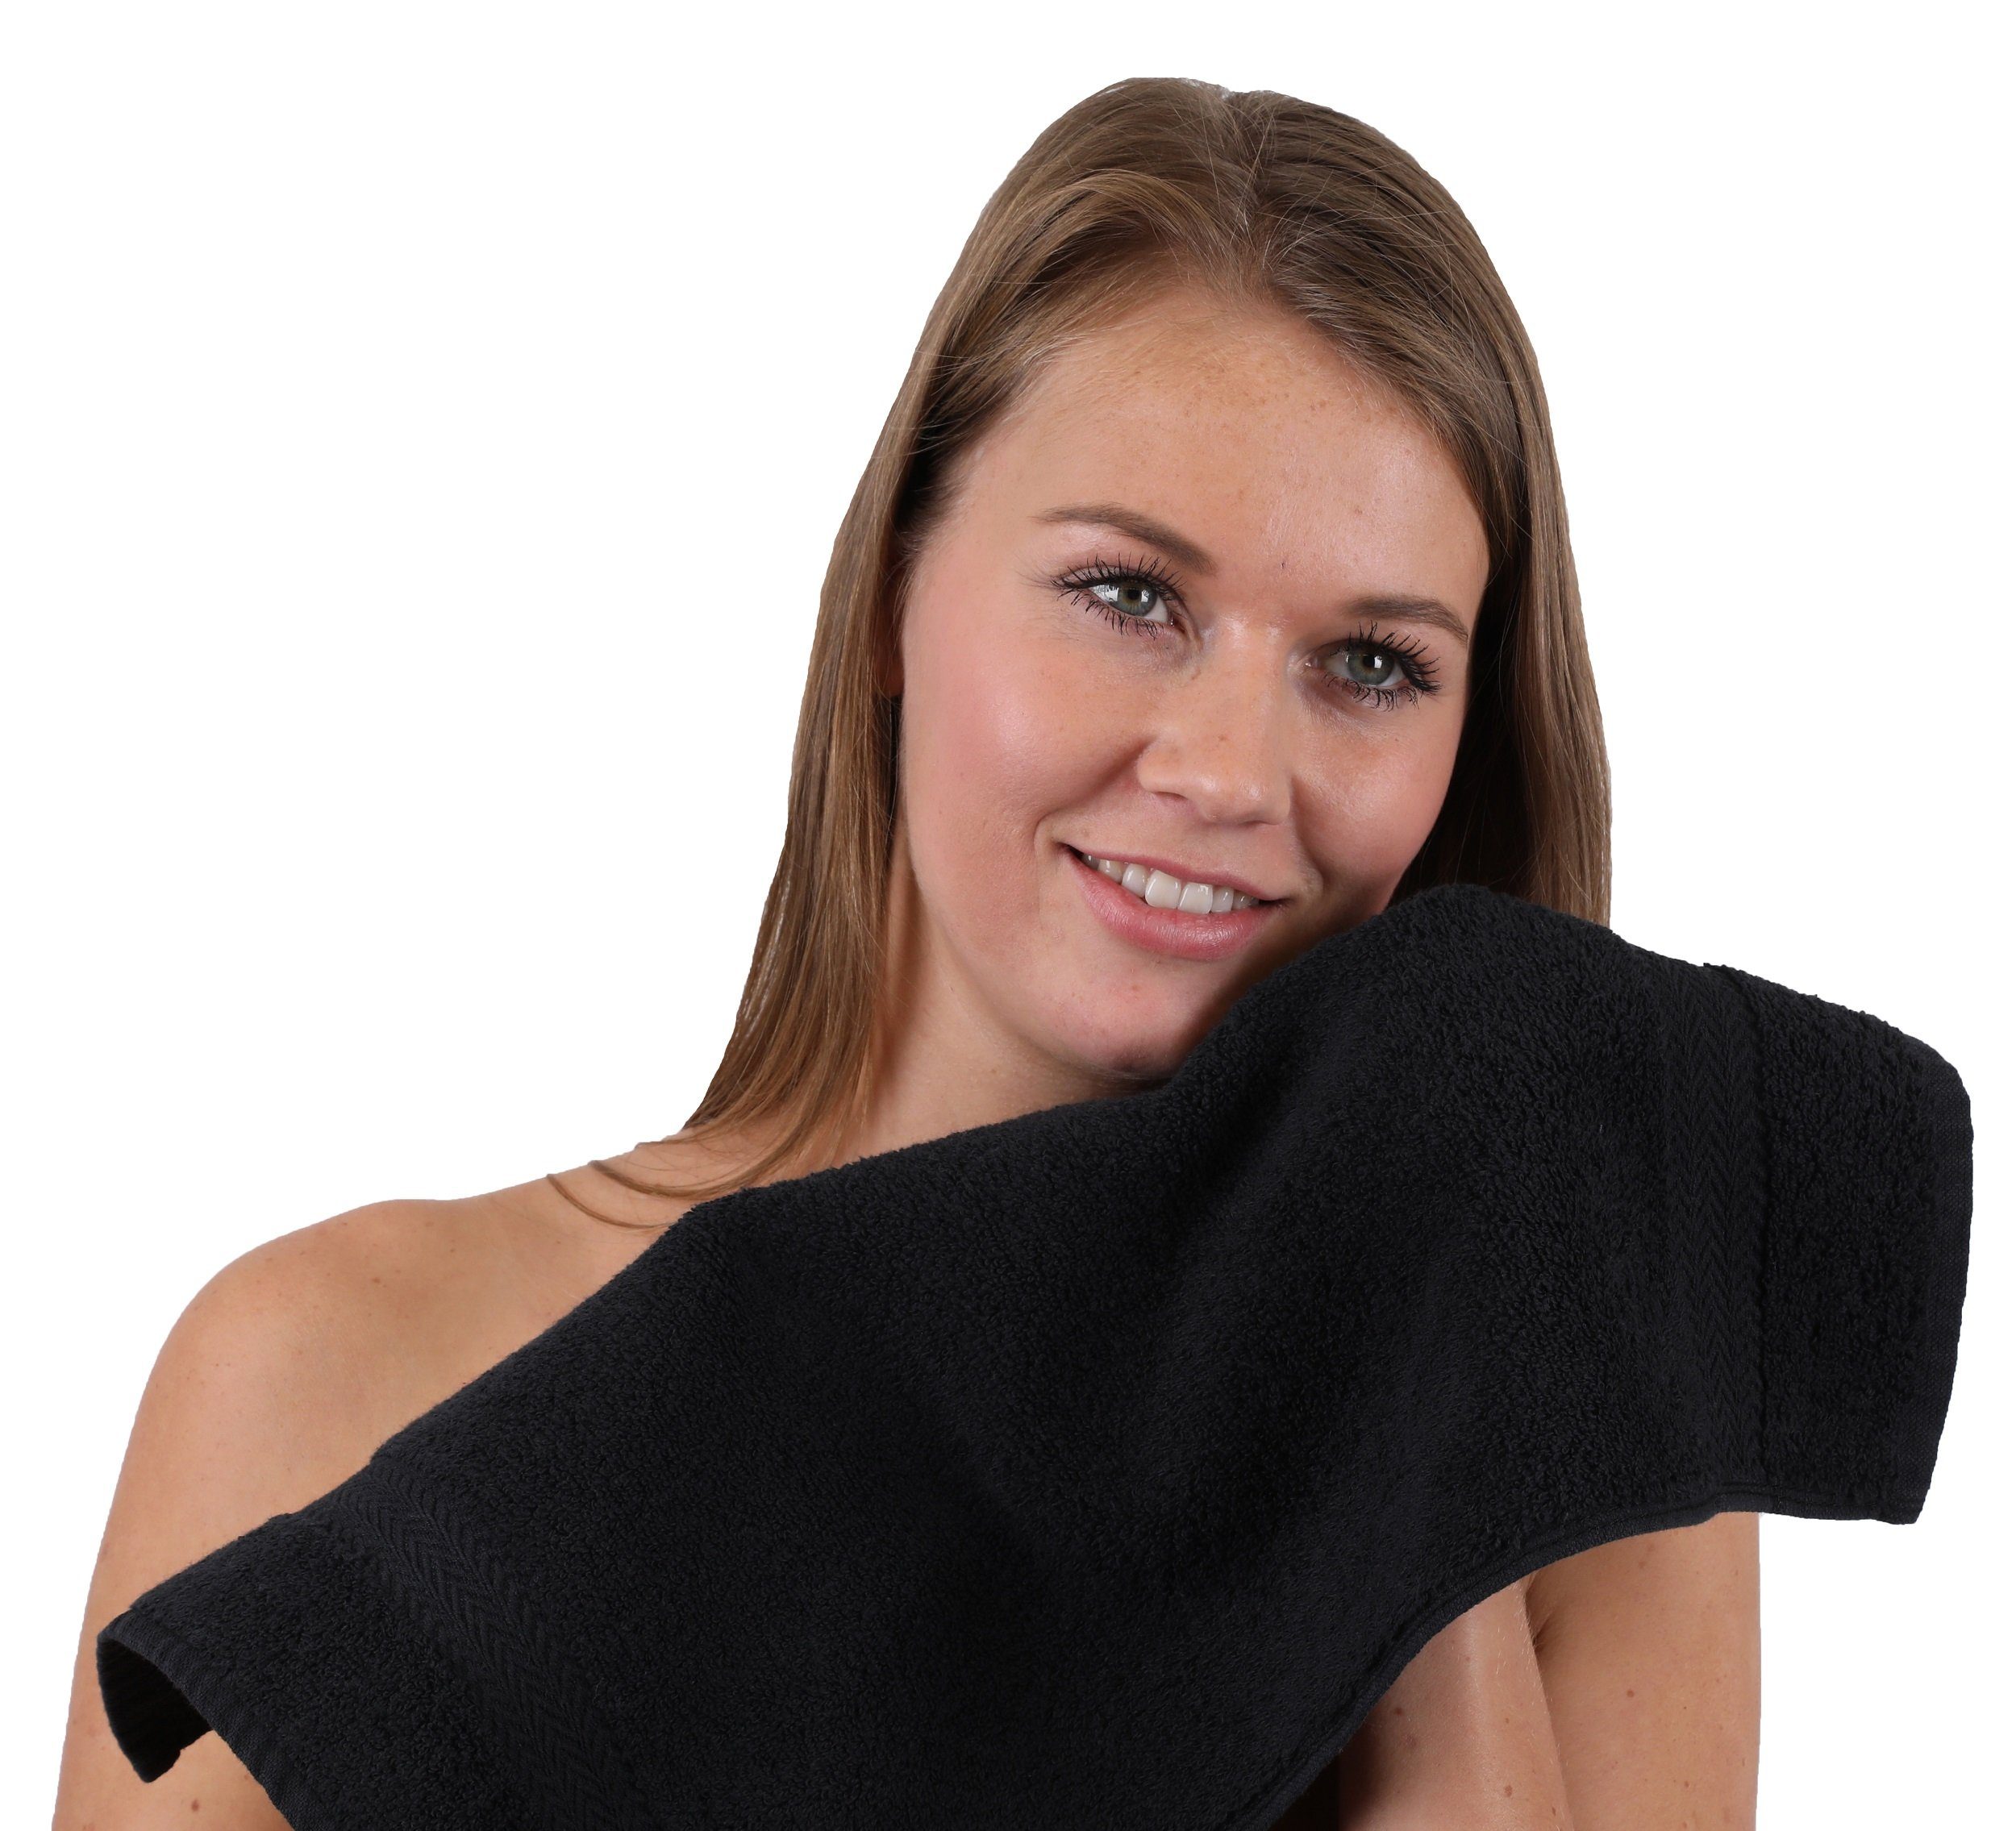 Betz Handtuch Set Farbe Classic 100% Baumwolle 10-TLG. Handtuch-Set nussbraun und schwarz